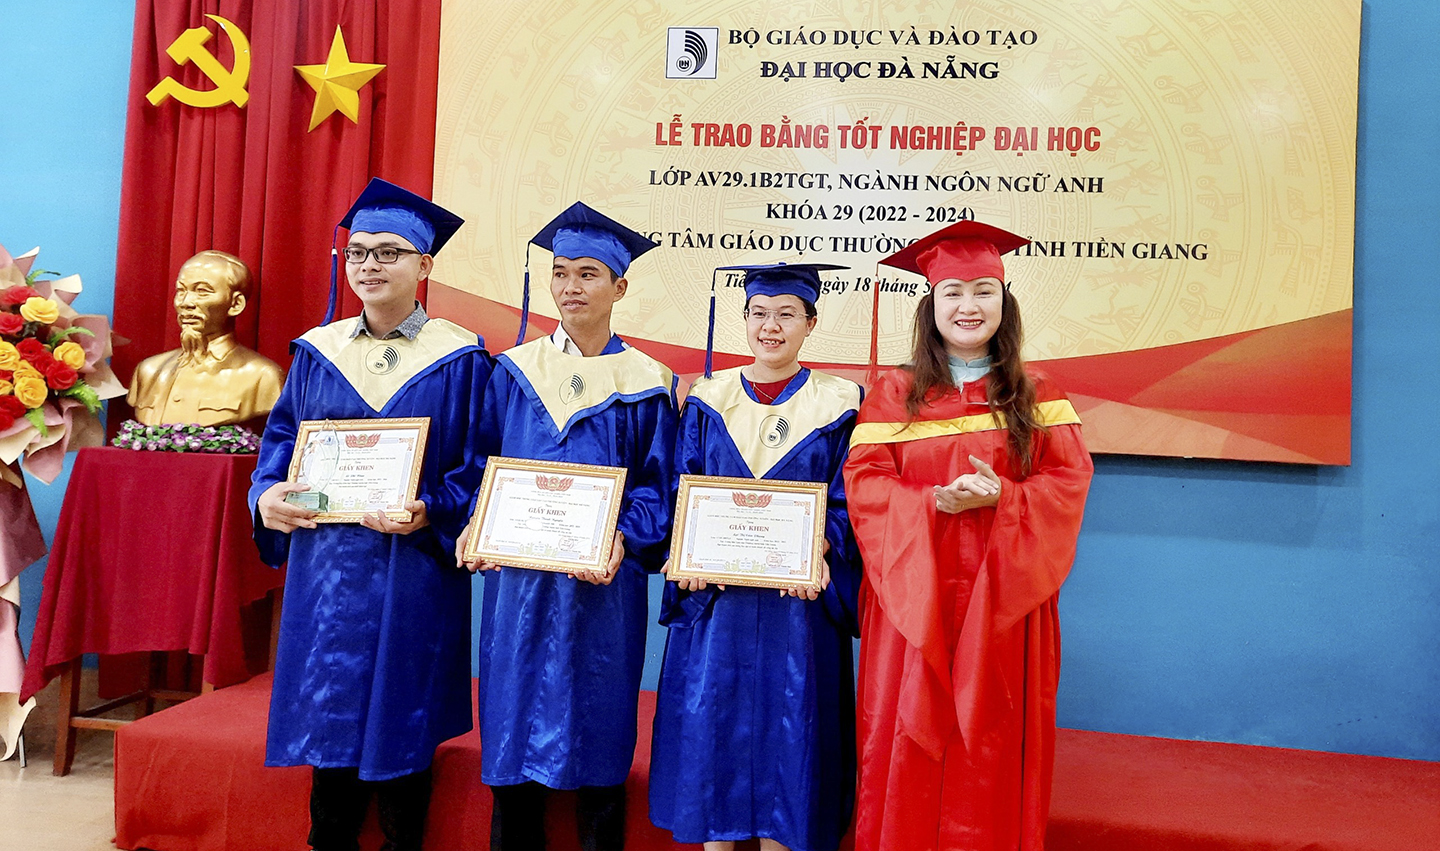 Đại học Đà Nẵng trao Bằng tốt nghiệp cho các tân cử nhân tại Tiền Giang